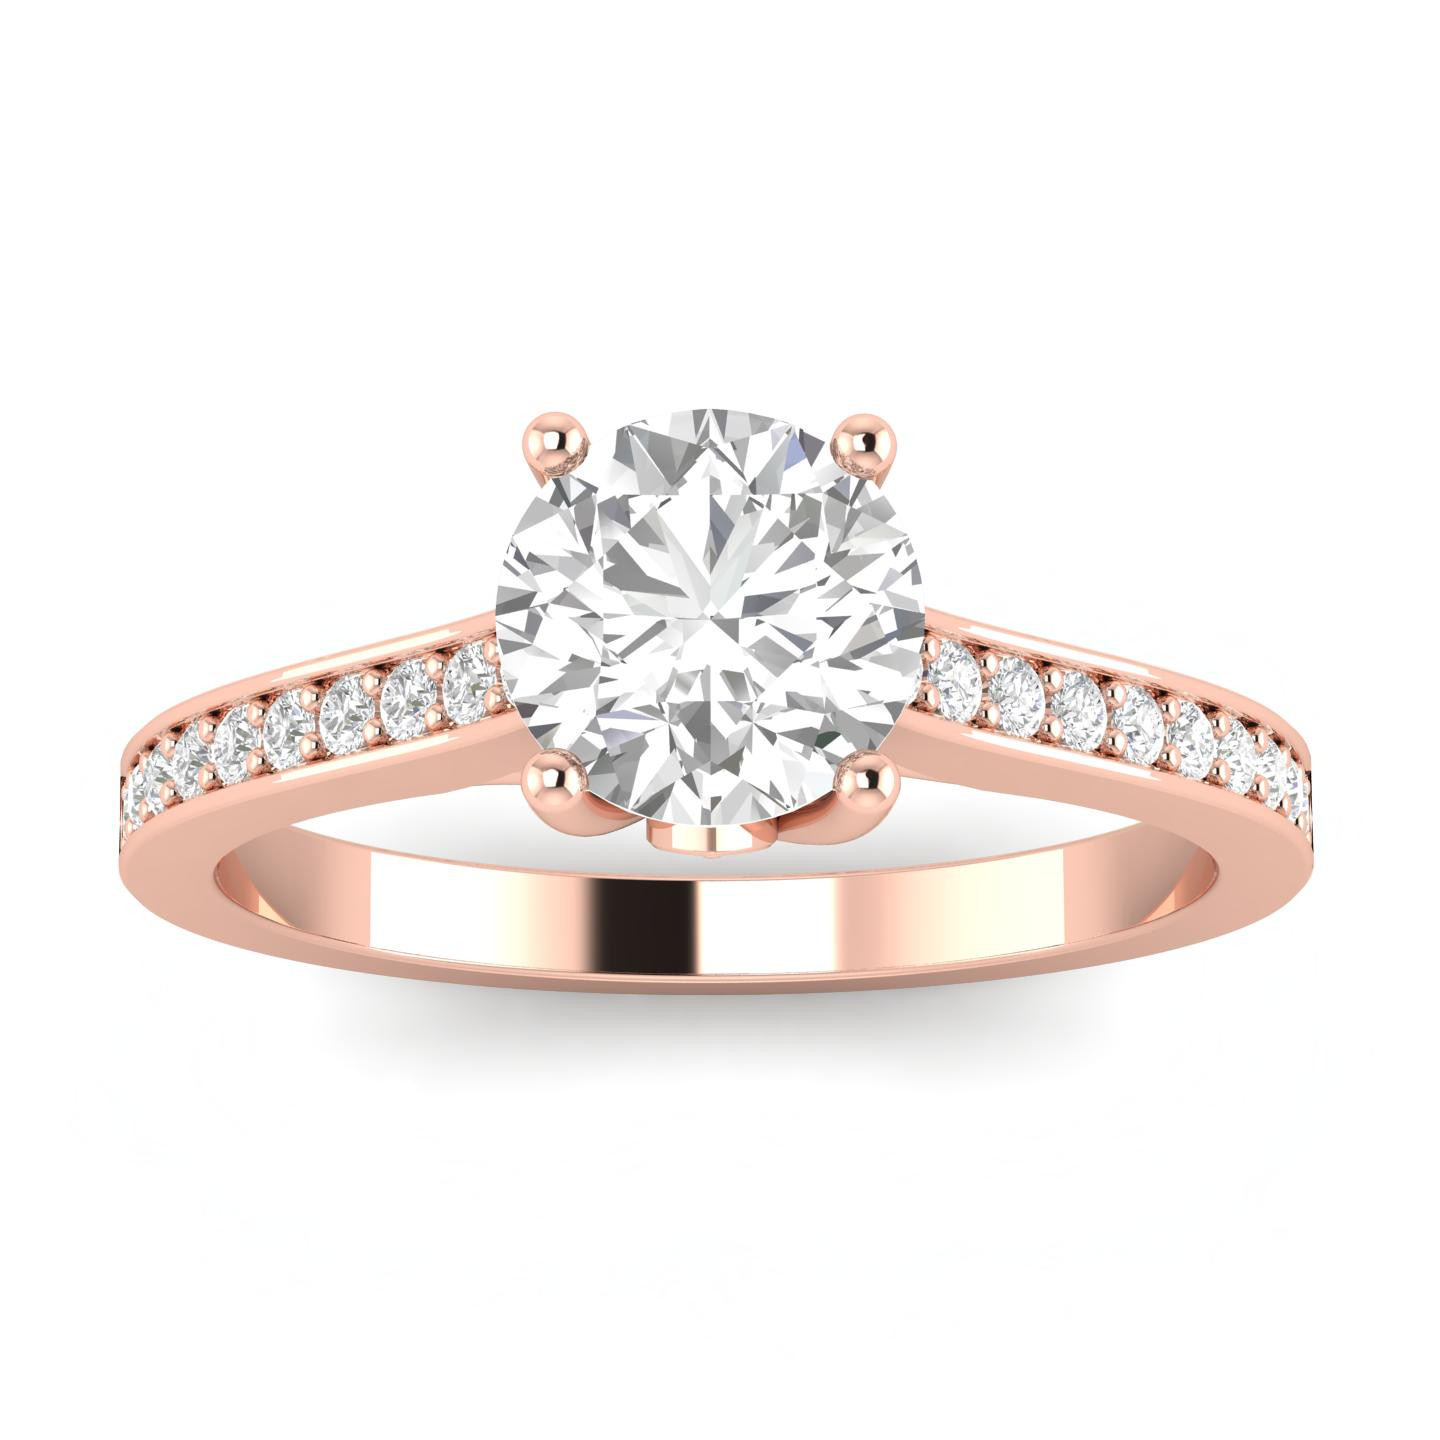 Diamond Rings At Walmart
 3 4ctw Diamond Engagement Ring in 10k Rose Gold Walmart